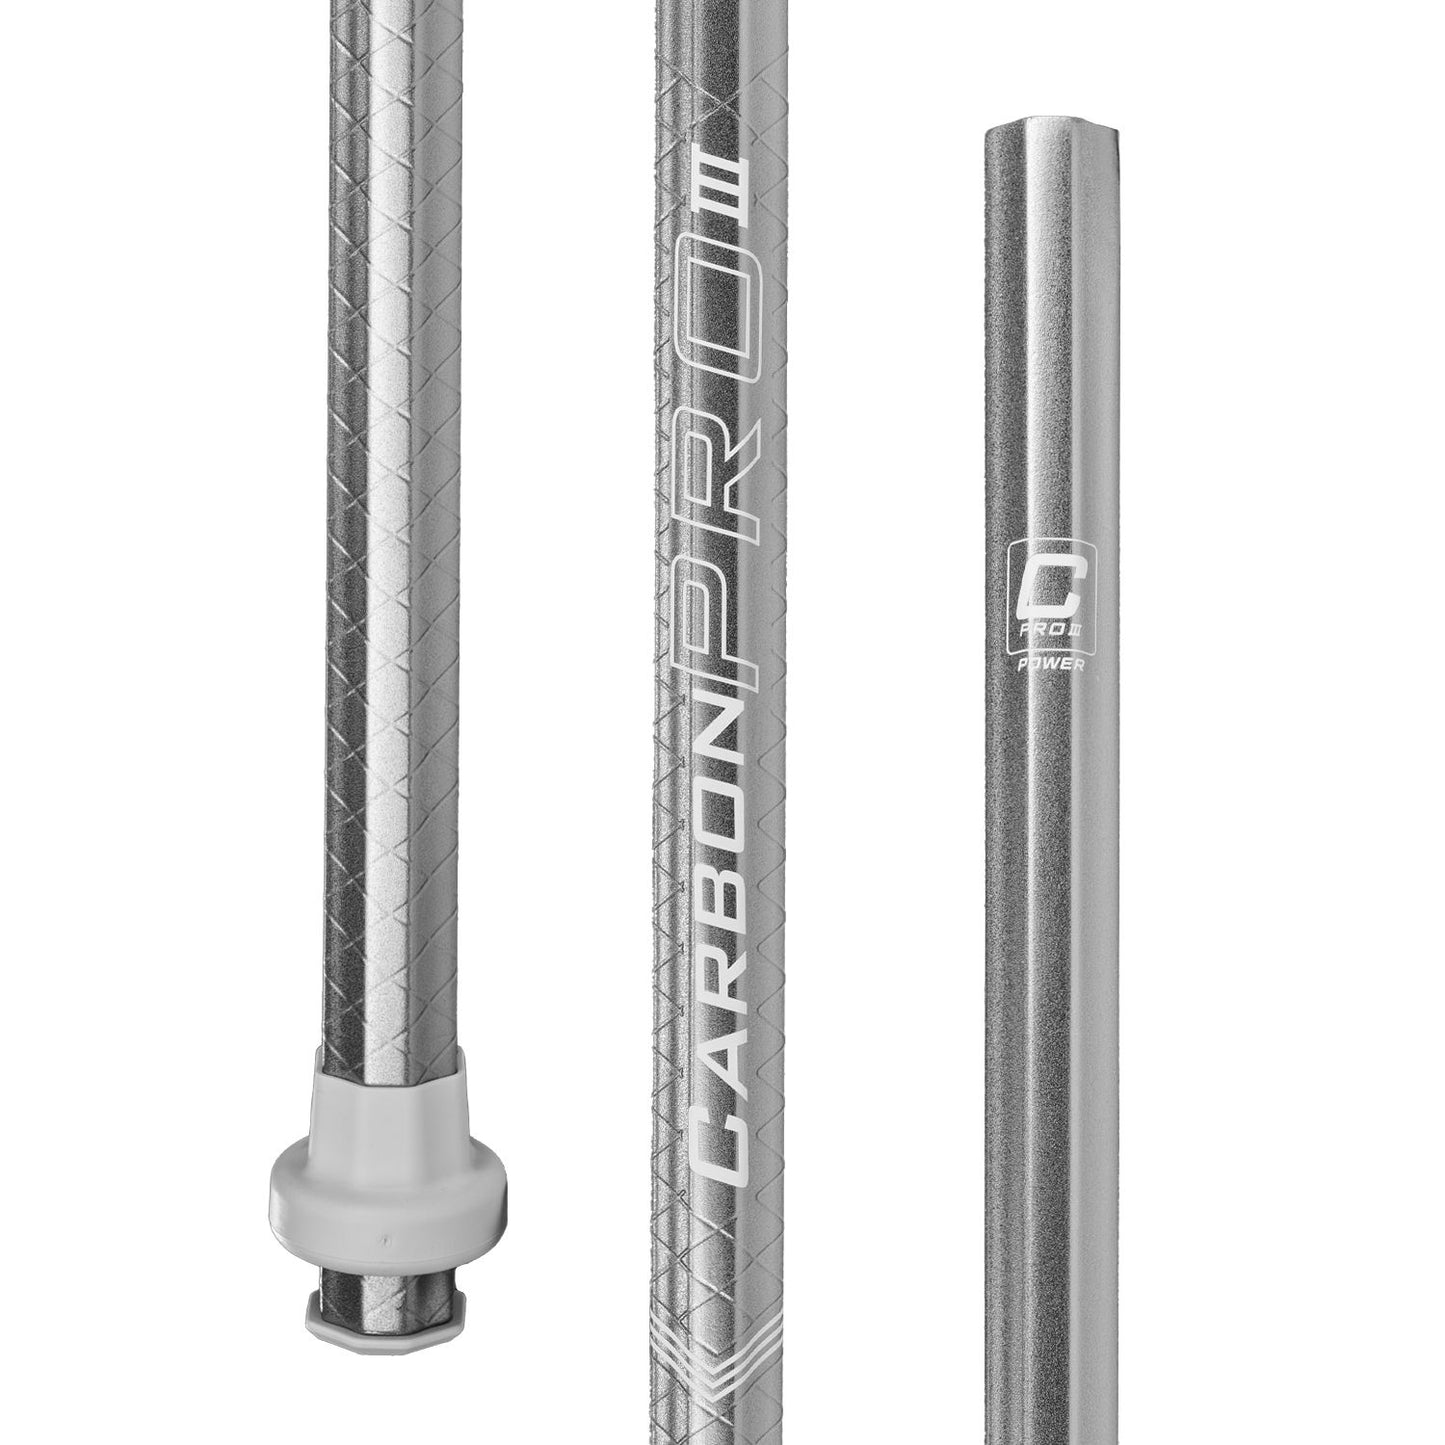 ECD Carbon Pro 3.0 LE Composite Power Attack Lacrosse Shaft Silver